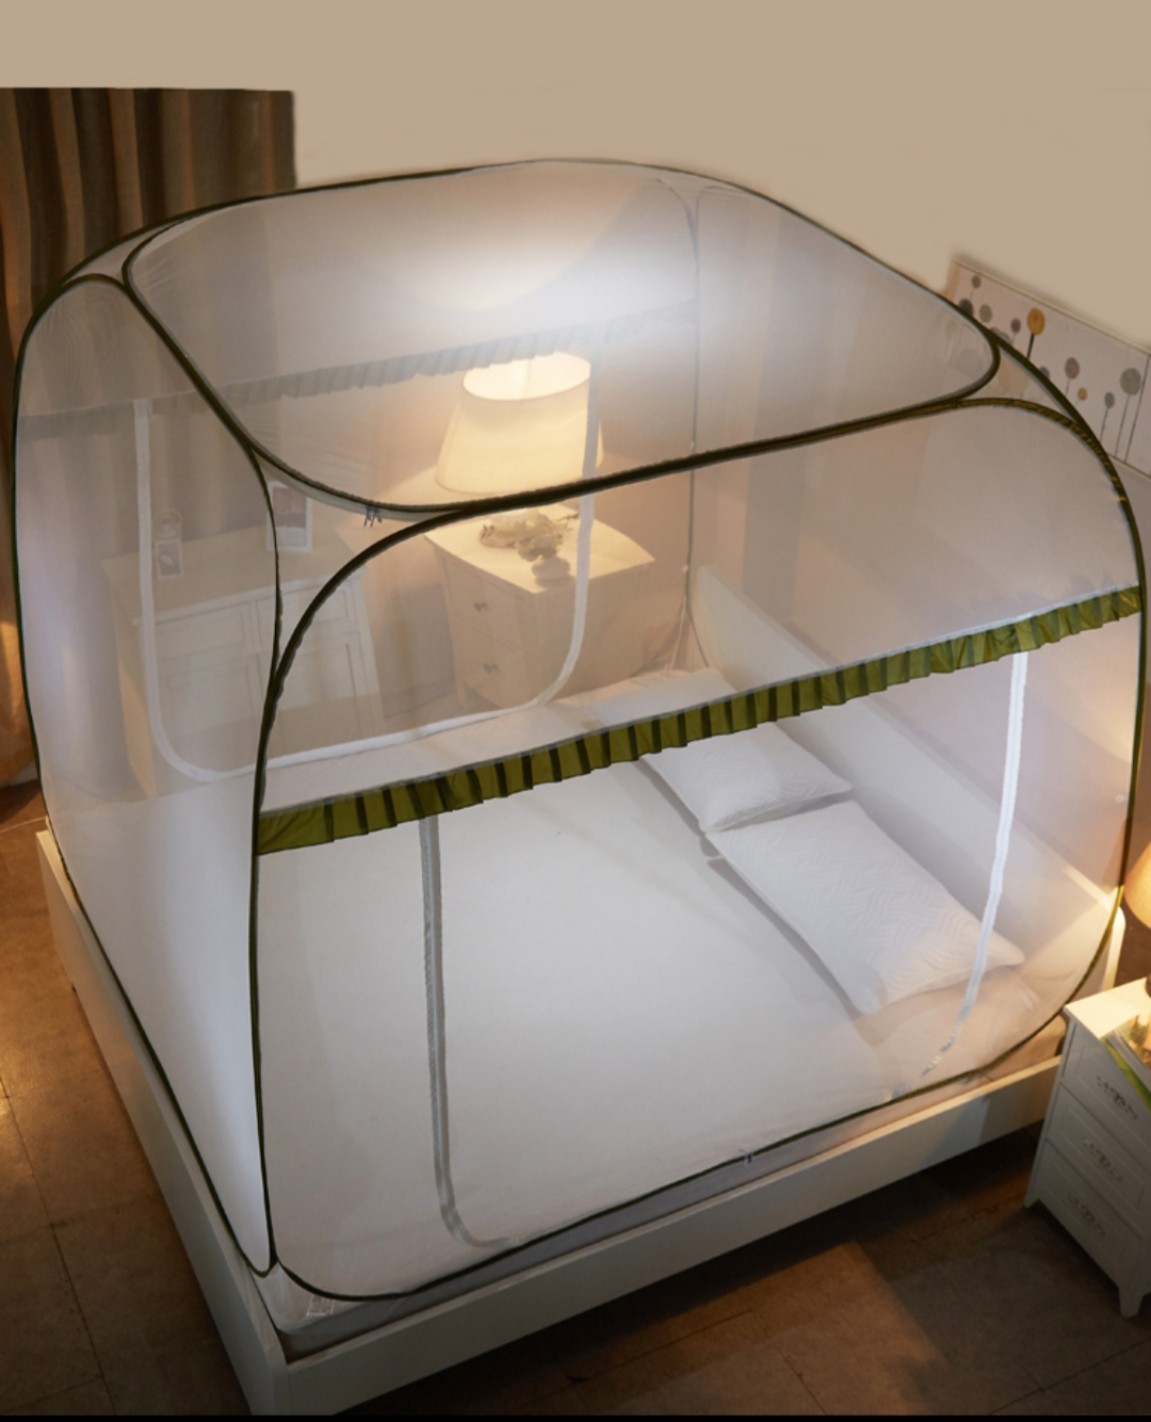 Màn đỉnh vuông cao cấp gấp gọn thông minh kiểu dáng đỉnh vuông rộng rãi, thông thoáng - Mùng ngủ chống muỗi đủ kích cỡ phù hợp với mọi loại giường, khung thép dẻo cực bền dễ uốn gấp gọn khi không dùng